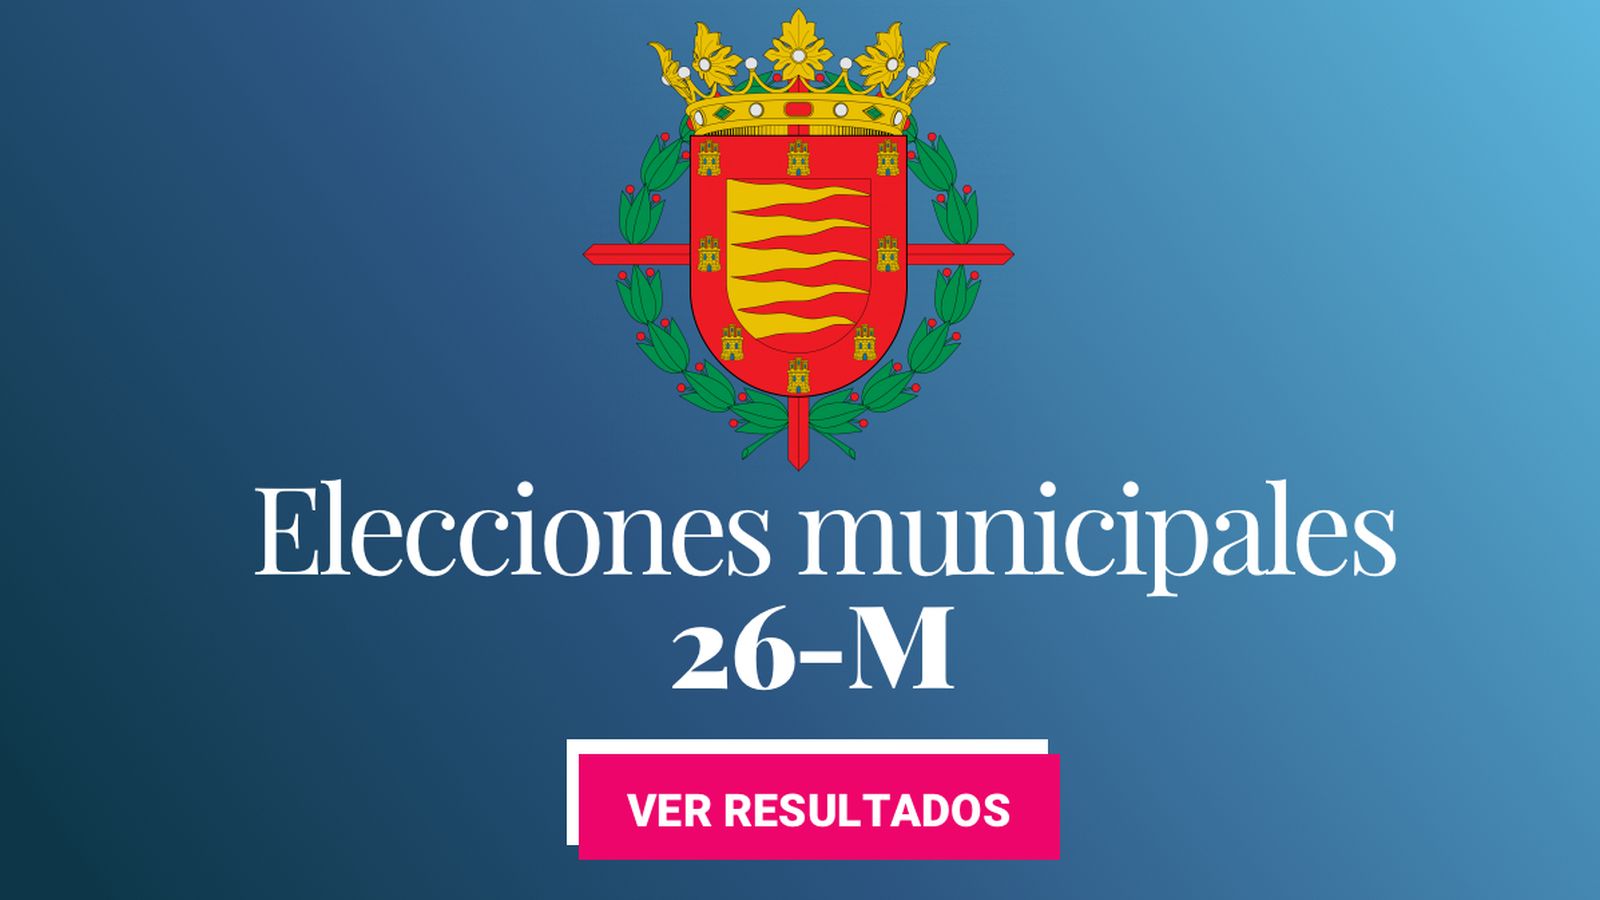 Foto: Elecciones municipales 2019 en Valladolid. (C.C./EC)